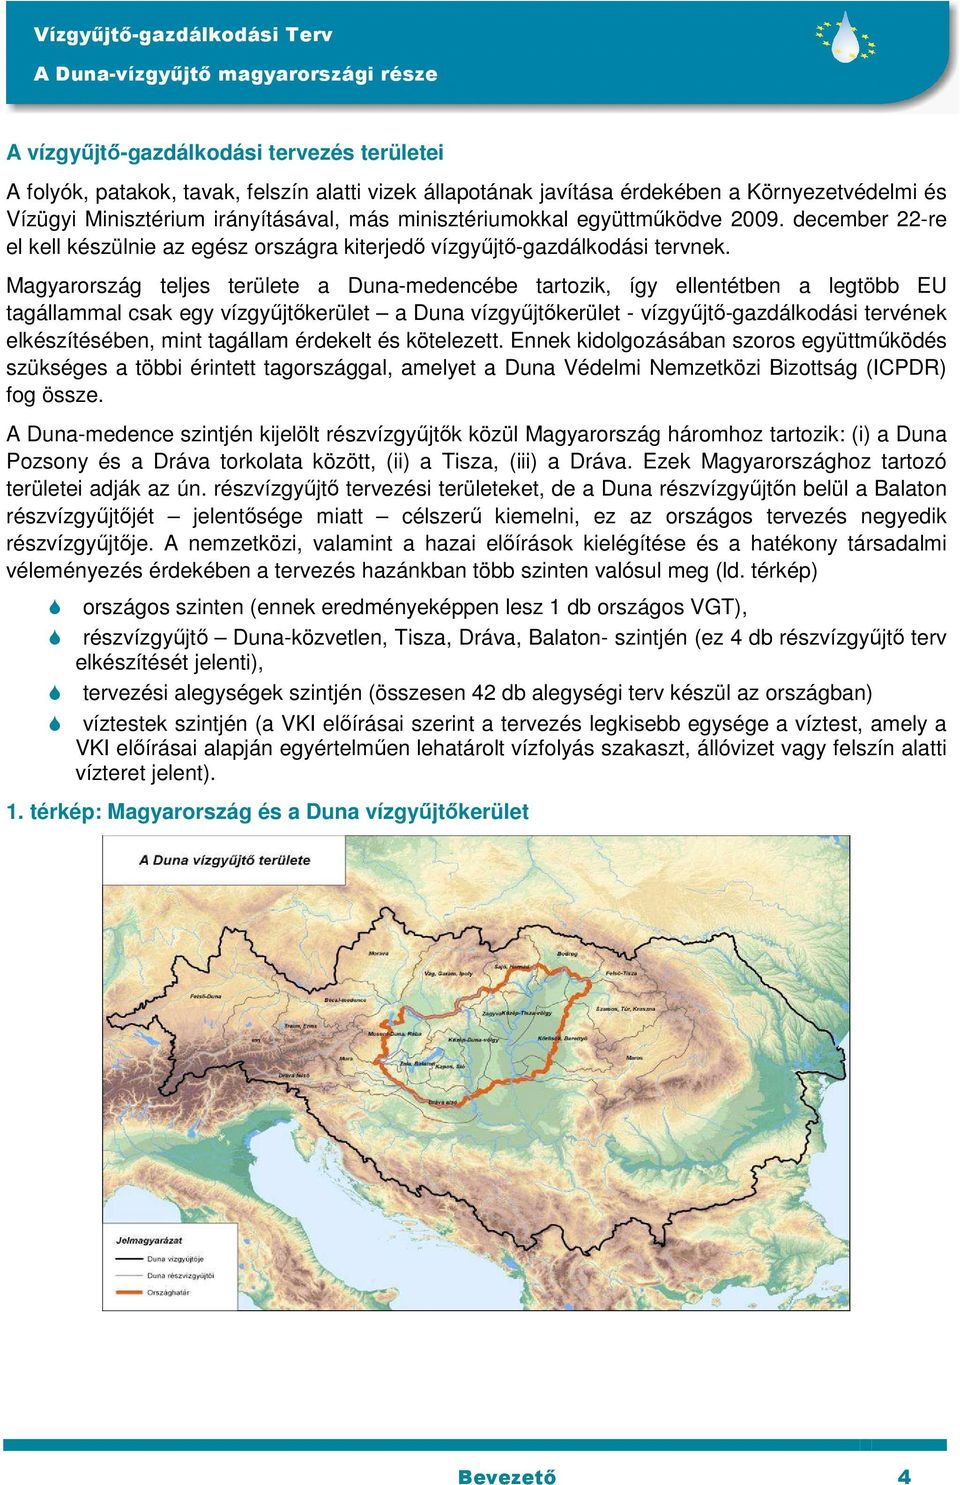 Magyarország teljes területe a Duna-medencébe tartozik, így ellentétben a legtöbb EU tagállammal csak egy vízgyűjtőkerület a Duna vízgyűjtőkerület - vízgyűjtő-gazdálkodási tervének elkészítésében,